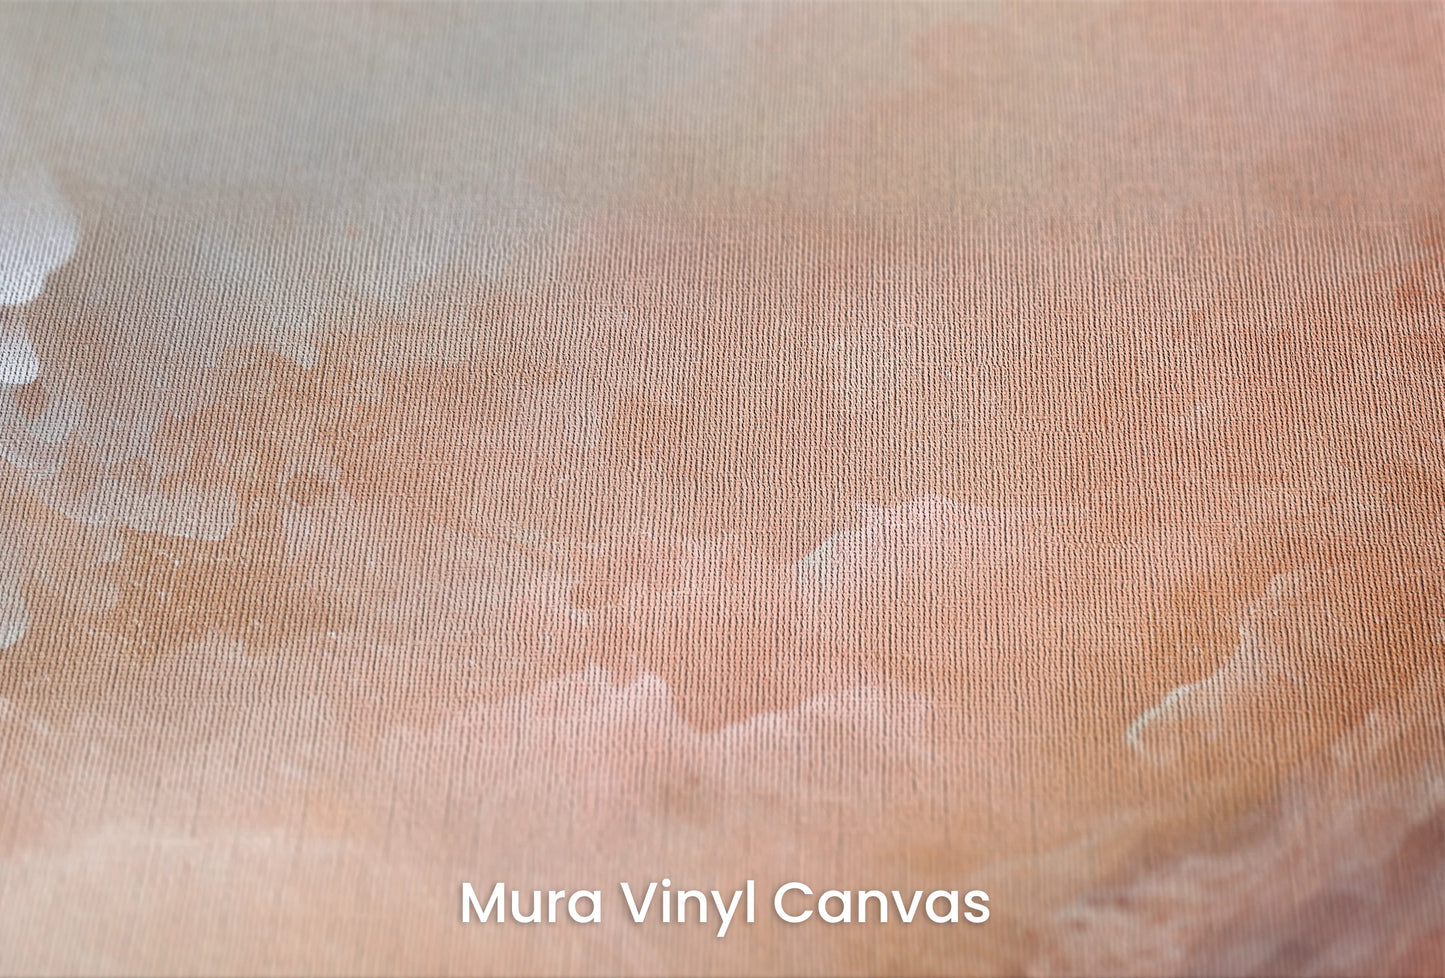 Zbliżenie na artystyczną fototapetę o nazwie Lunar Silence na podłożu Mura Vinyl Canvas - faktura naturalnego płótna.